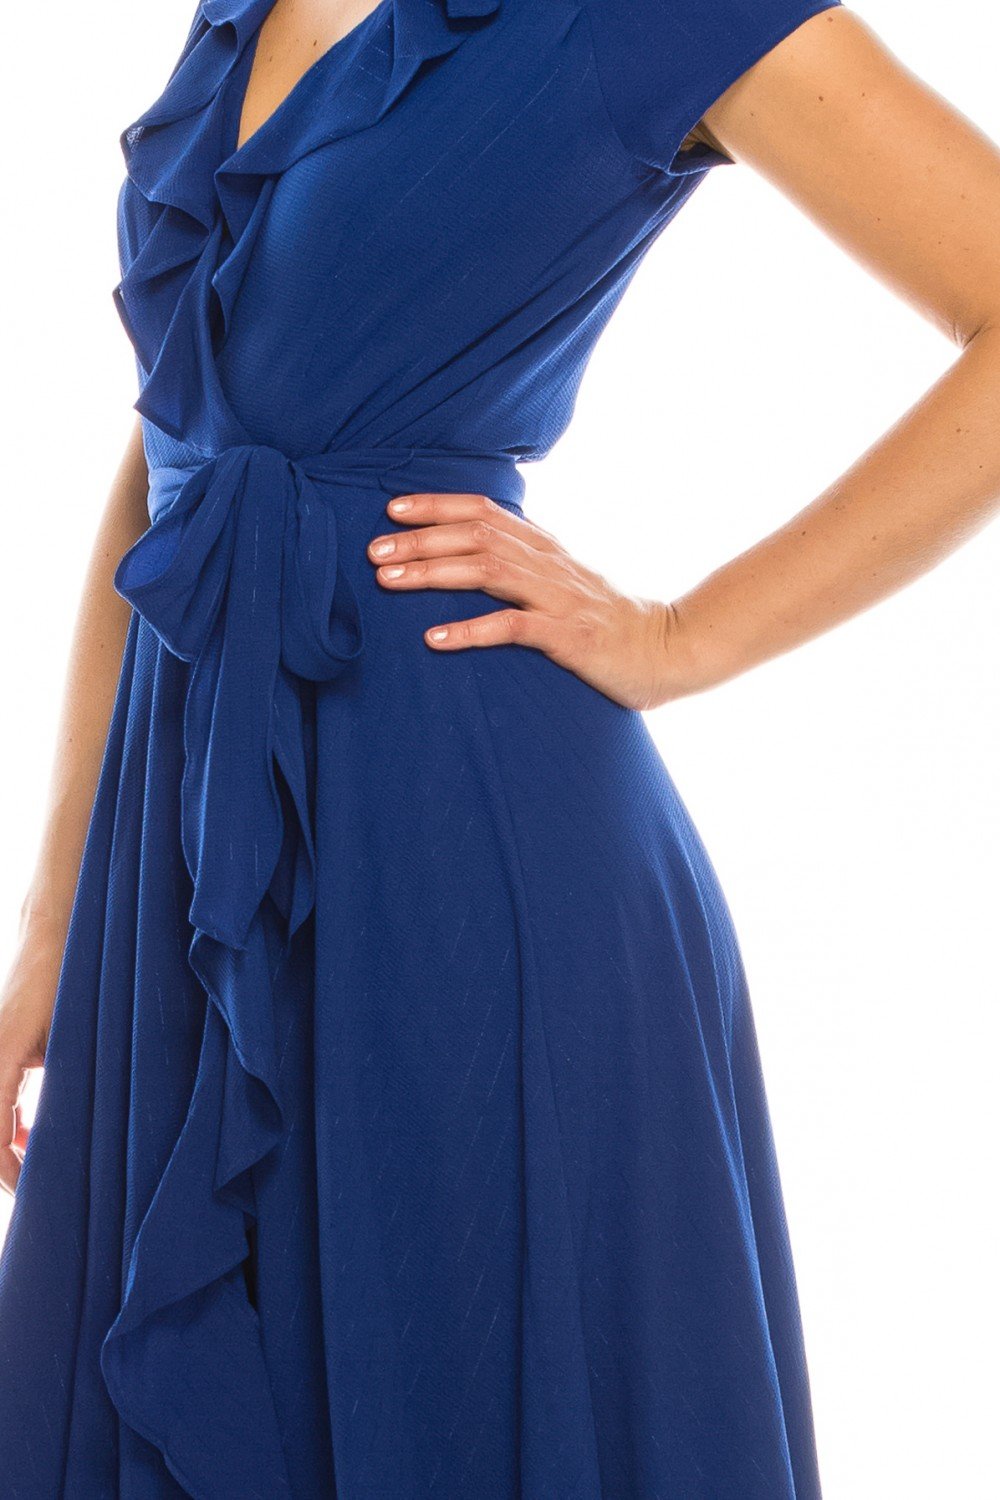 Gabby Skye - 56839MG Short Sleeve Metallic Pinstriped Faux Wrap Dress In Blue